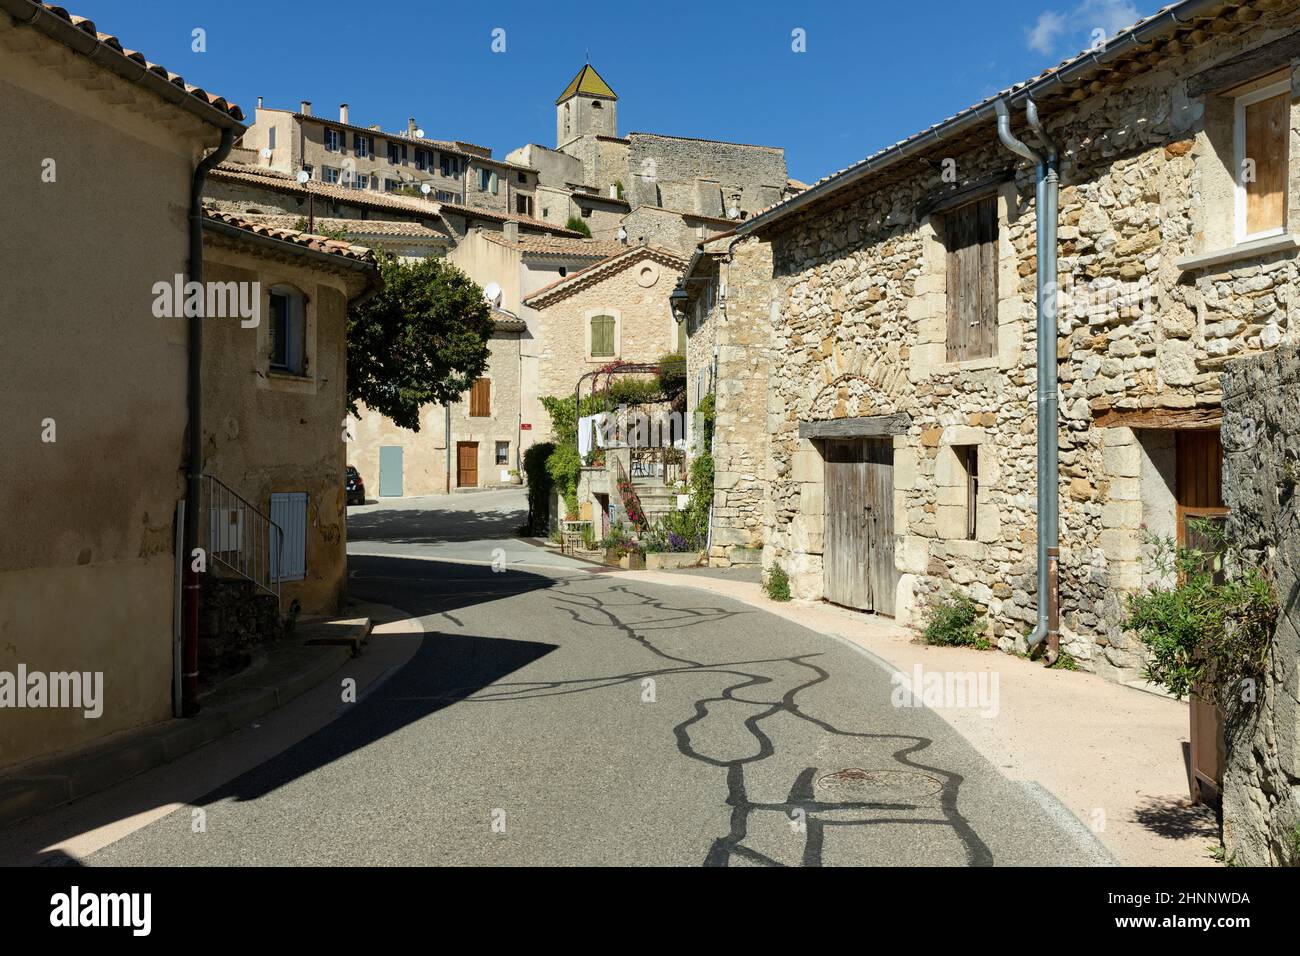 Historic village of Aurel in Départements Vaucluse, France Stock Photo